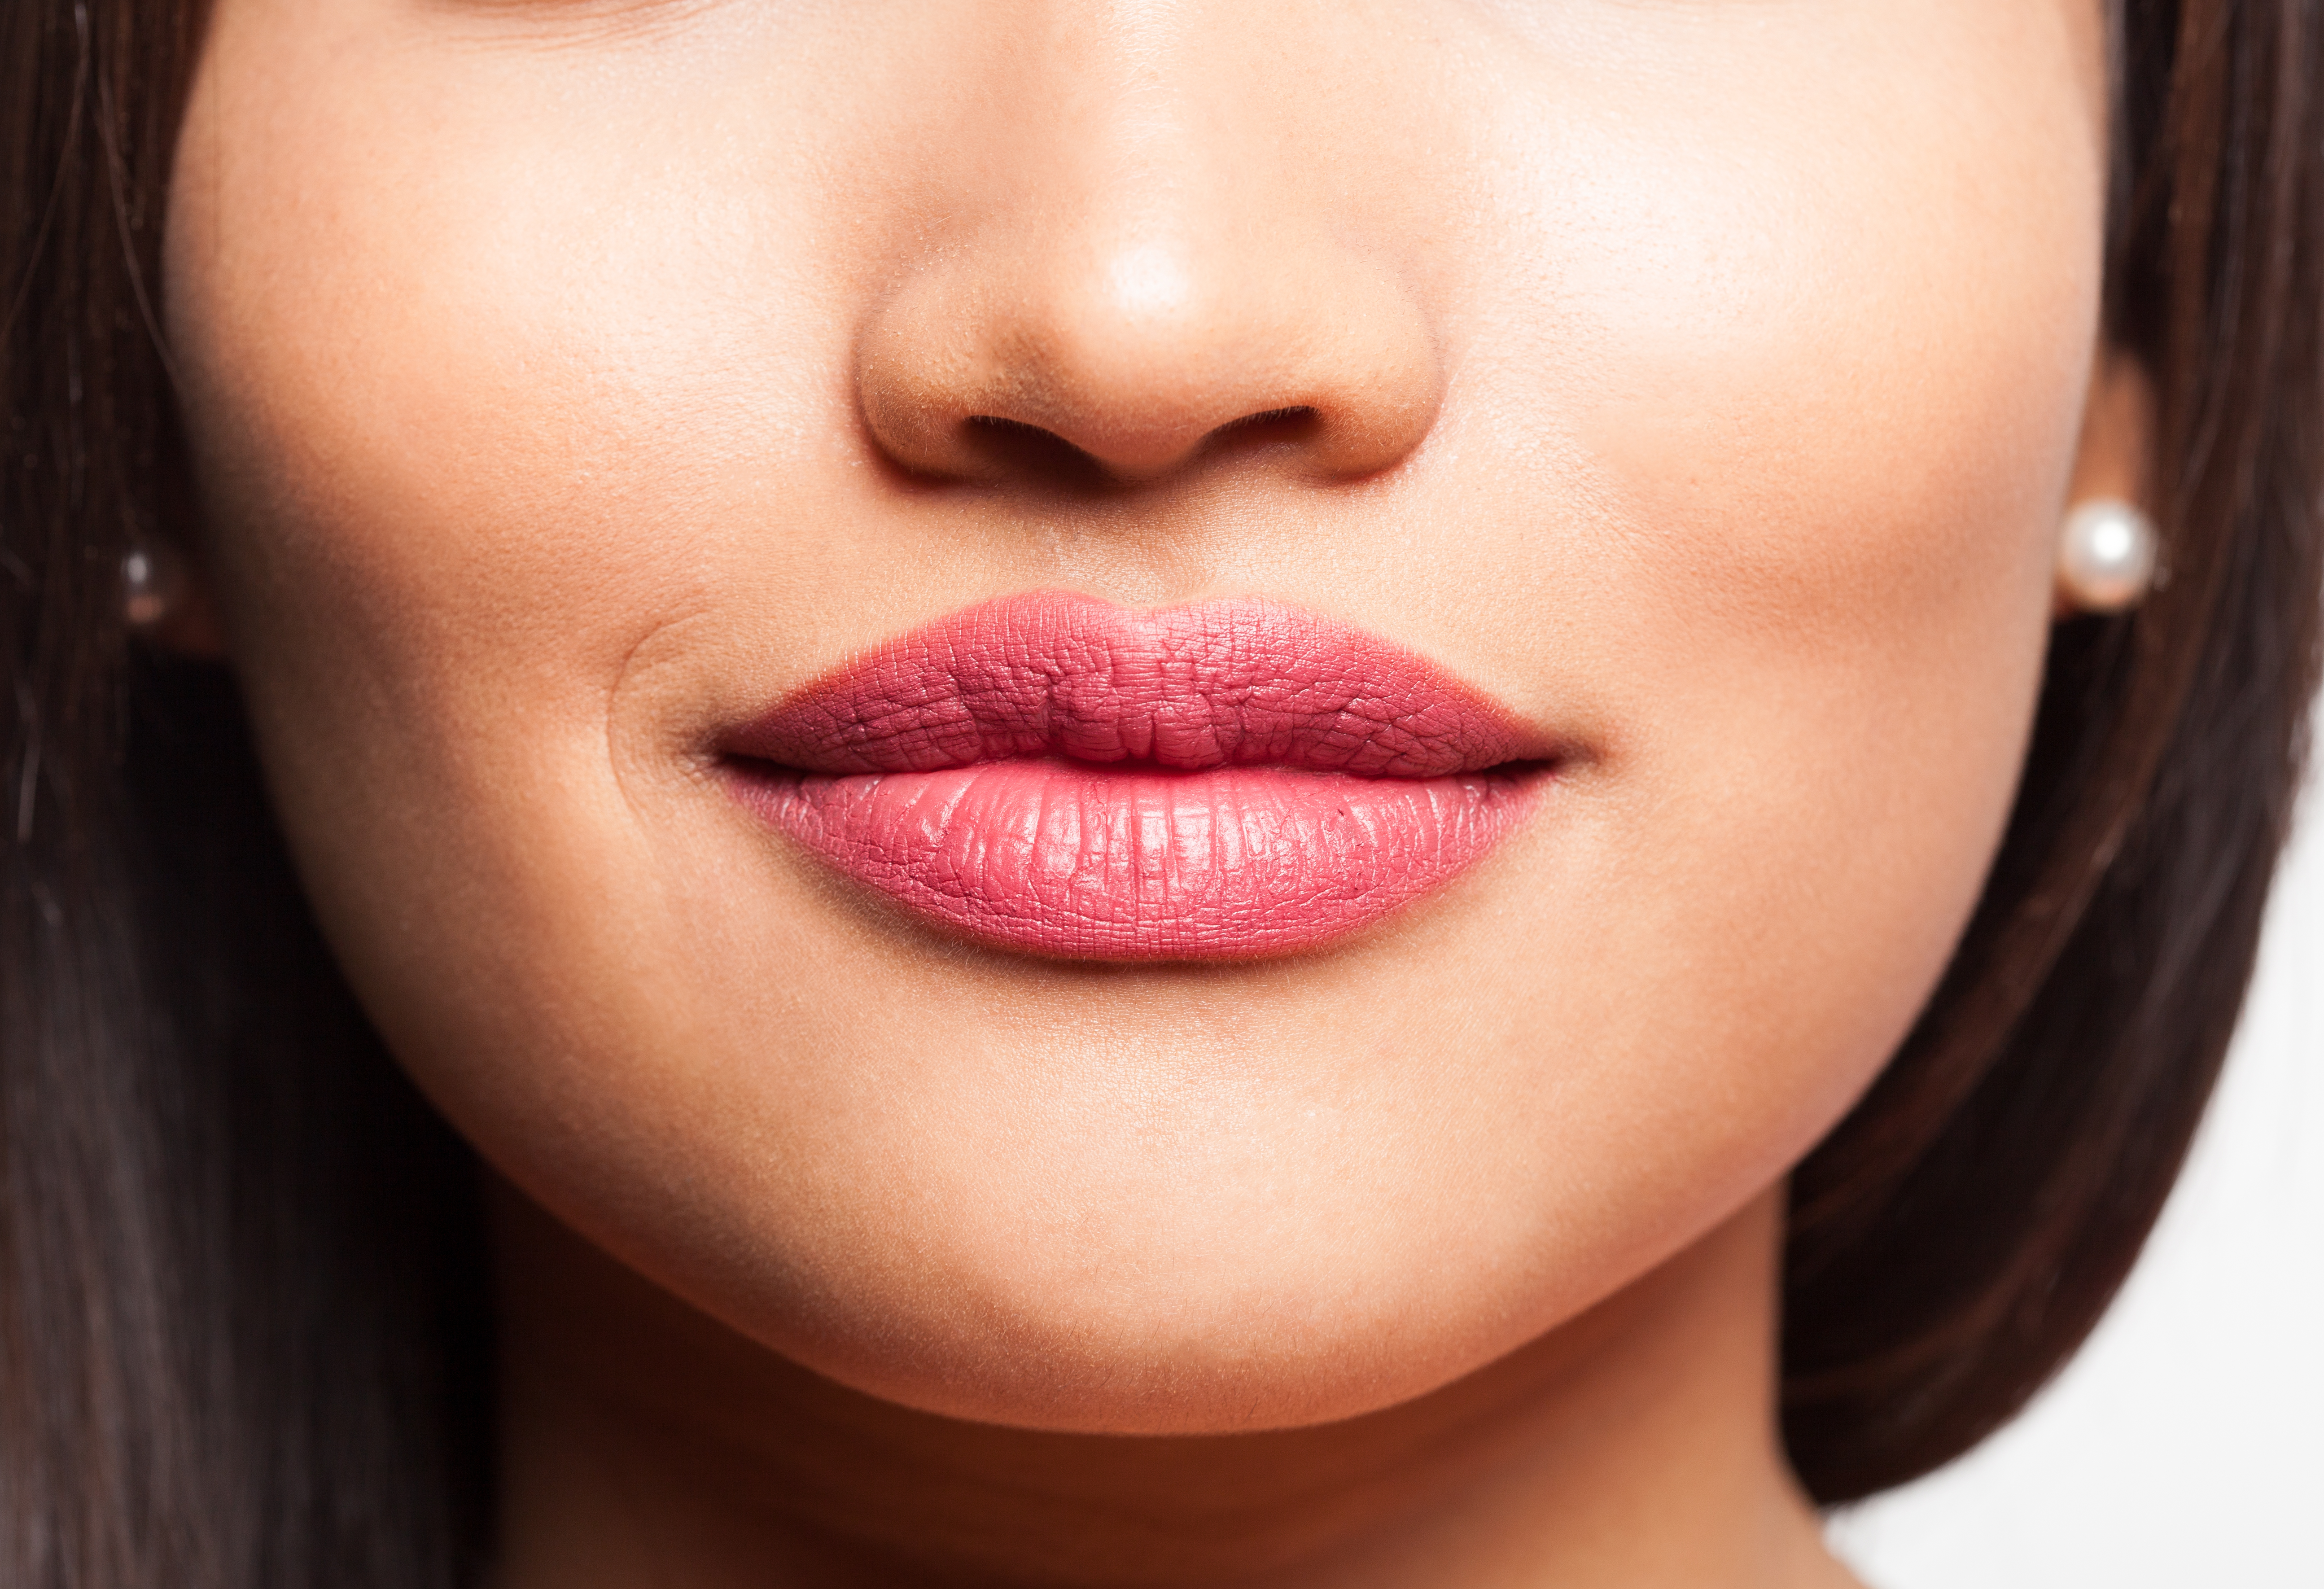 O desejo por lábios mais volumosos tem feito muitas mulheres recorrerem ao preenchimento labial para conseguir este efeito